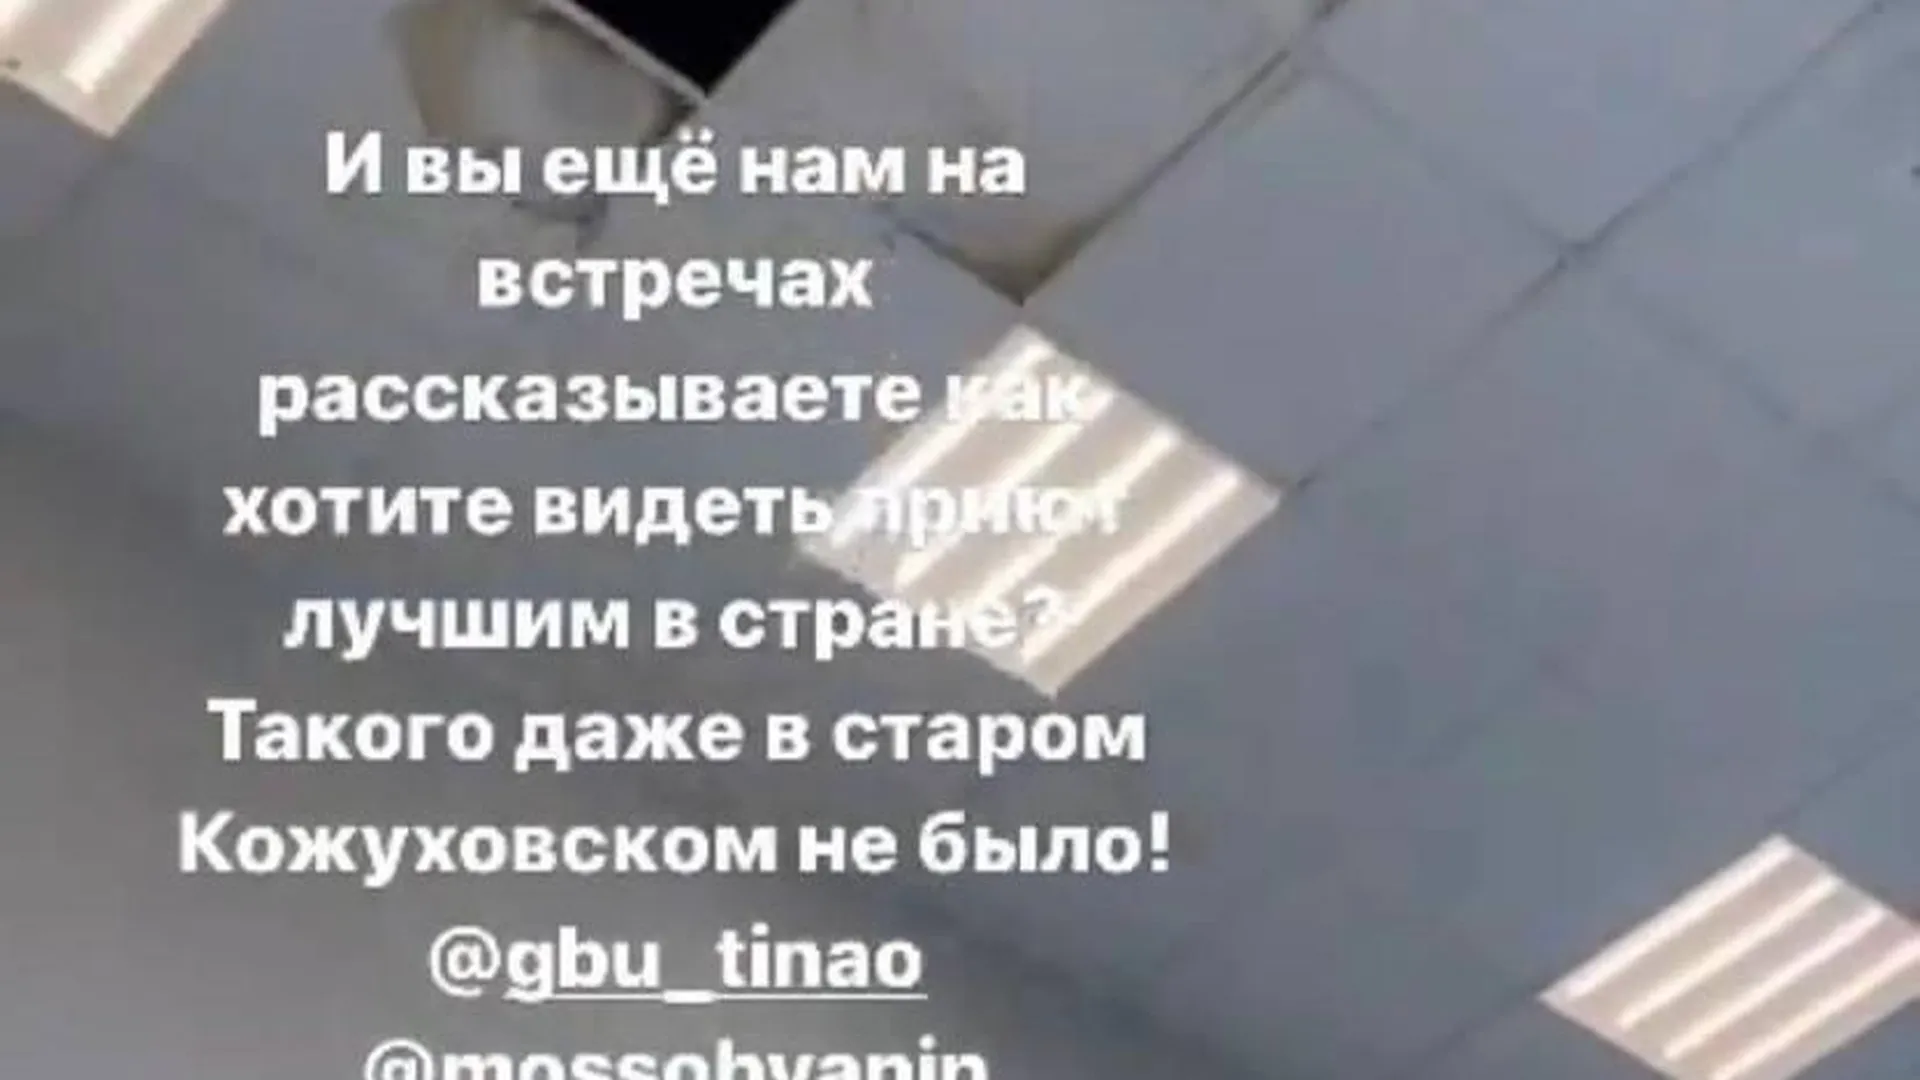 Скриншот из Instagram (соцсеть запрещена в России, так как принадлежит корпорации Meta, признанной экстремистской организацией)